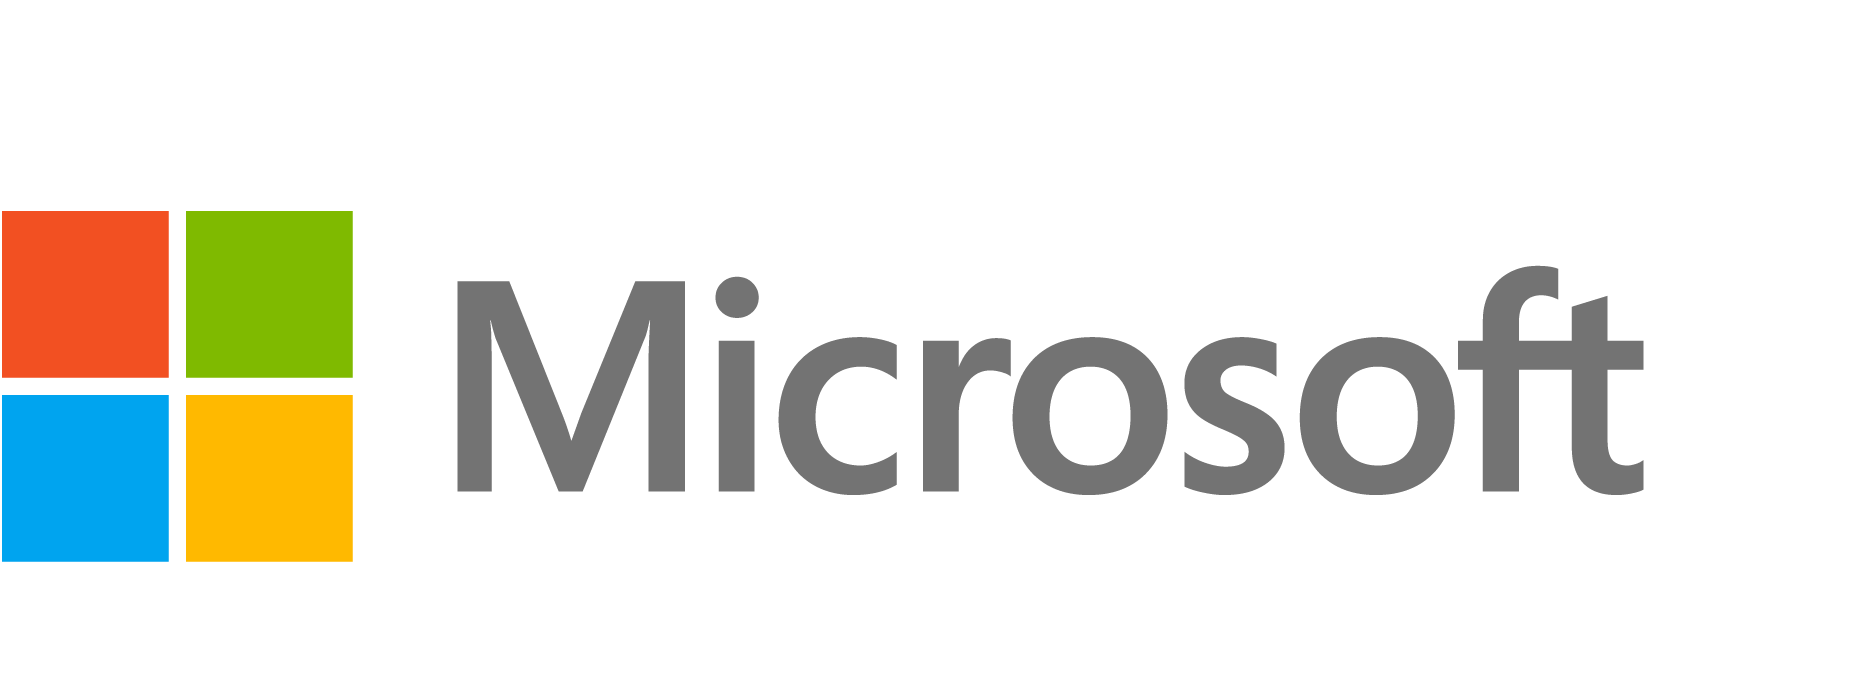 Microsoft Surface Hub Logo - Microsoft Surface Hub